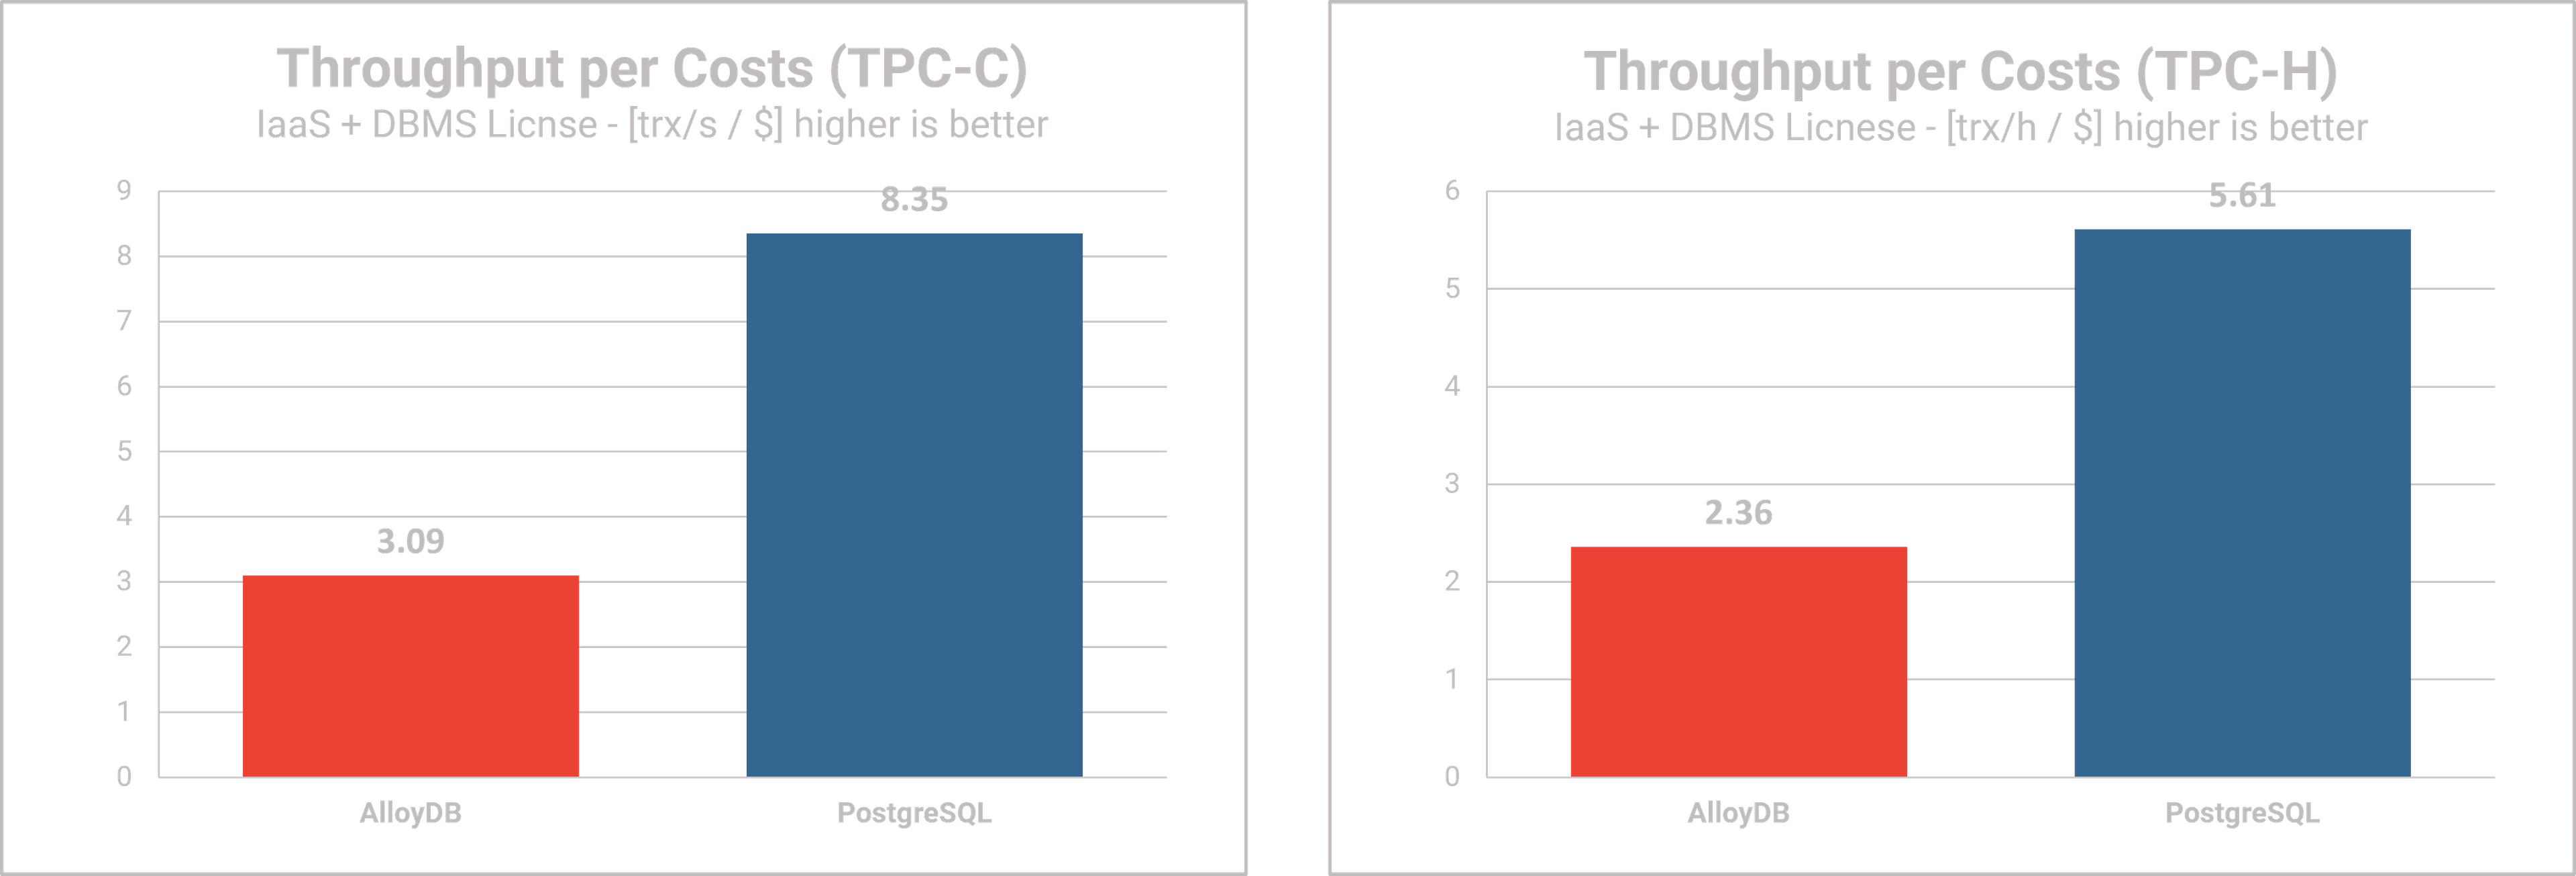 AlloyDB Omni performance testing - Performance per Cost 2 TPC-C TPC-H